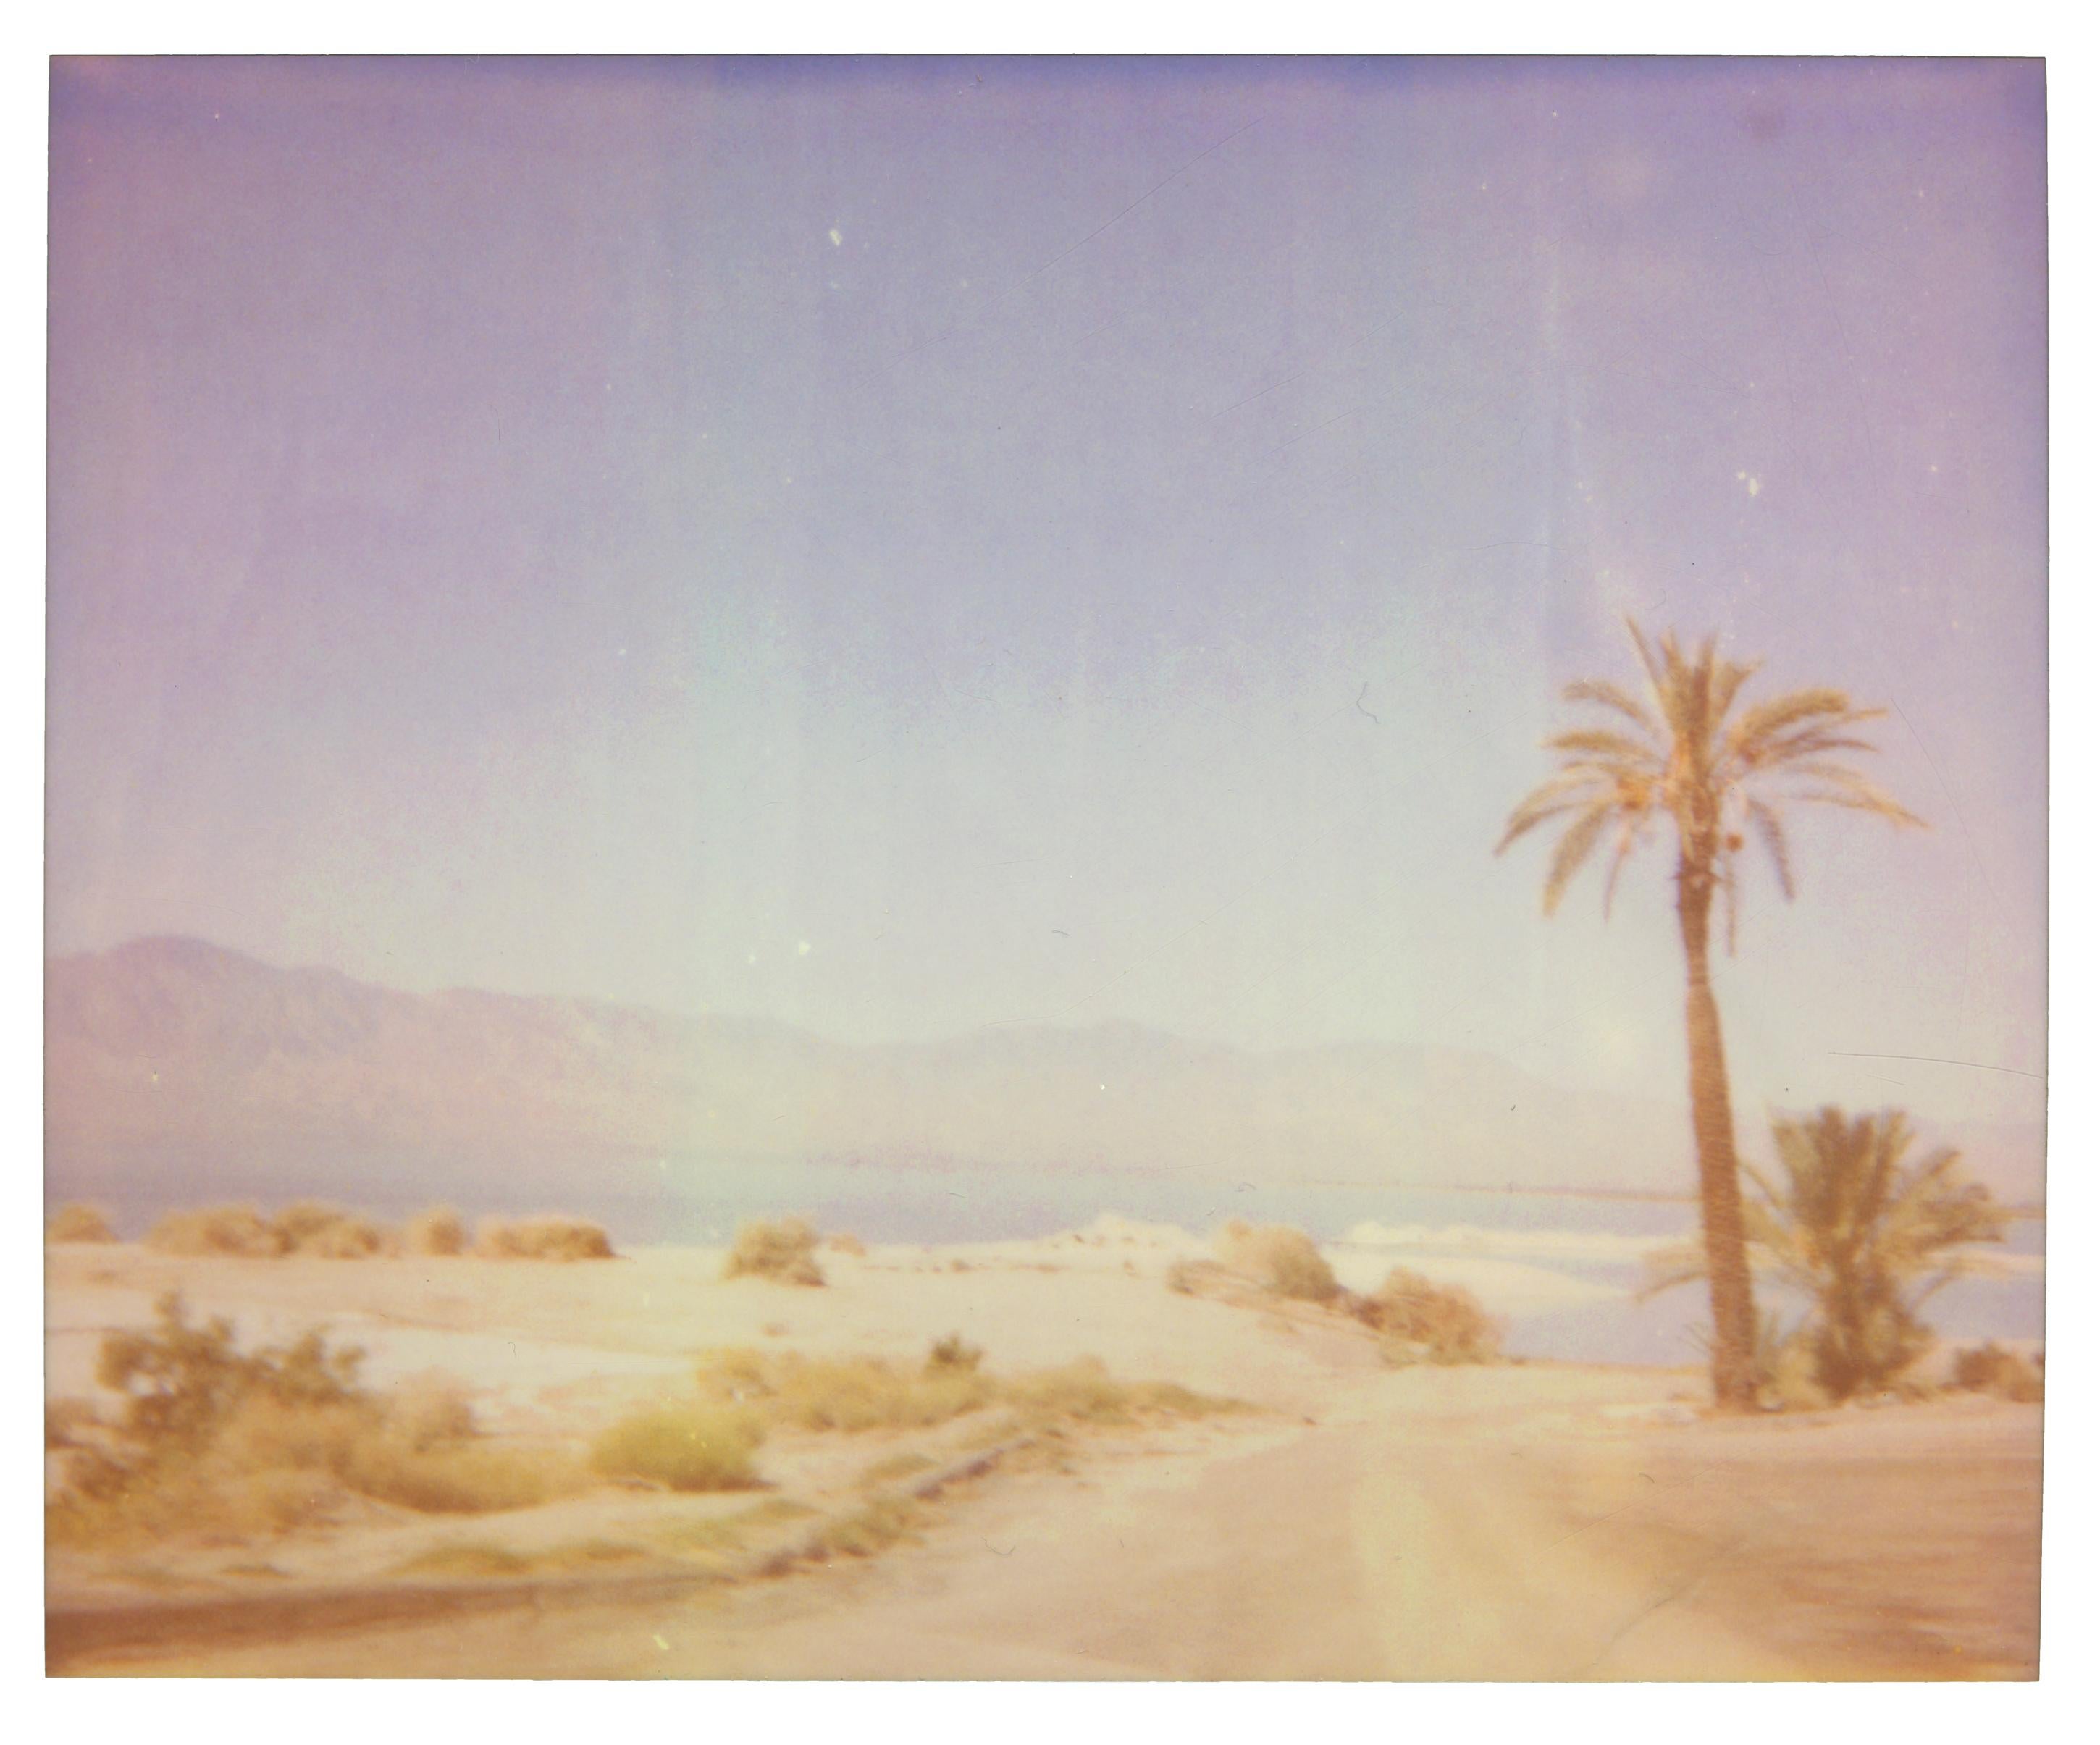 Stefanie Schneider Landscape Photograph - North Shore Mirage (California Badlands) - Contemporary, 21st Century, Polaroid